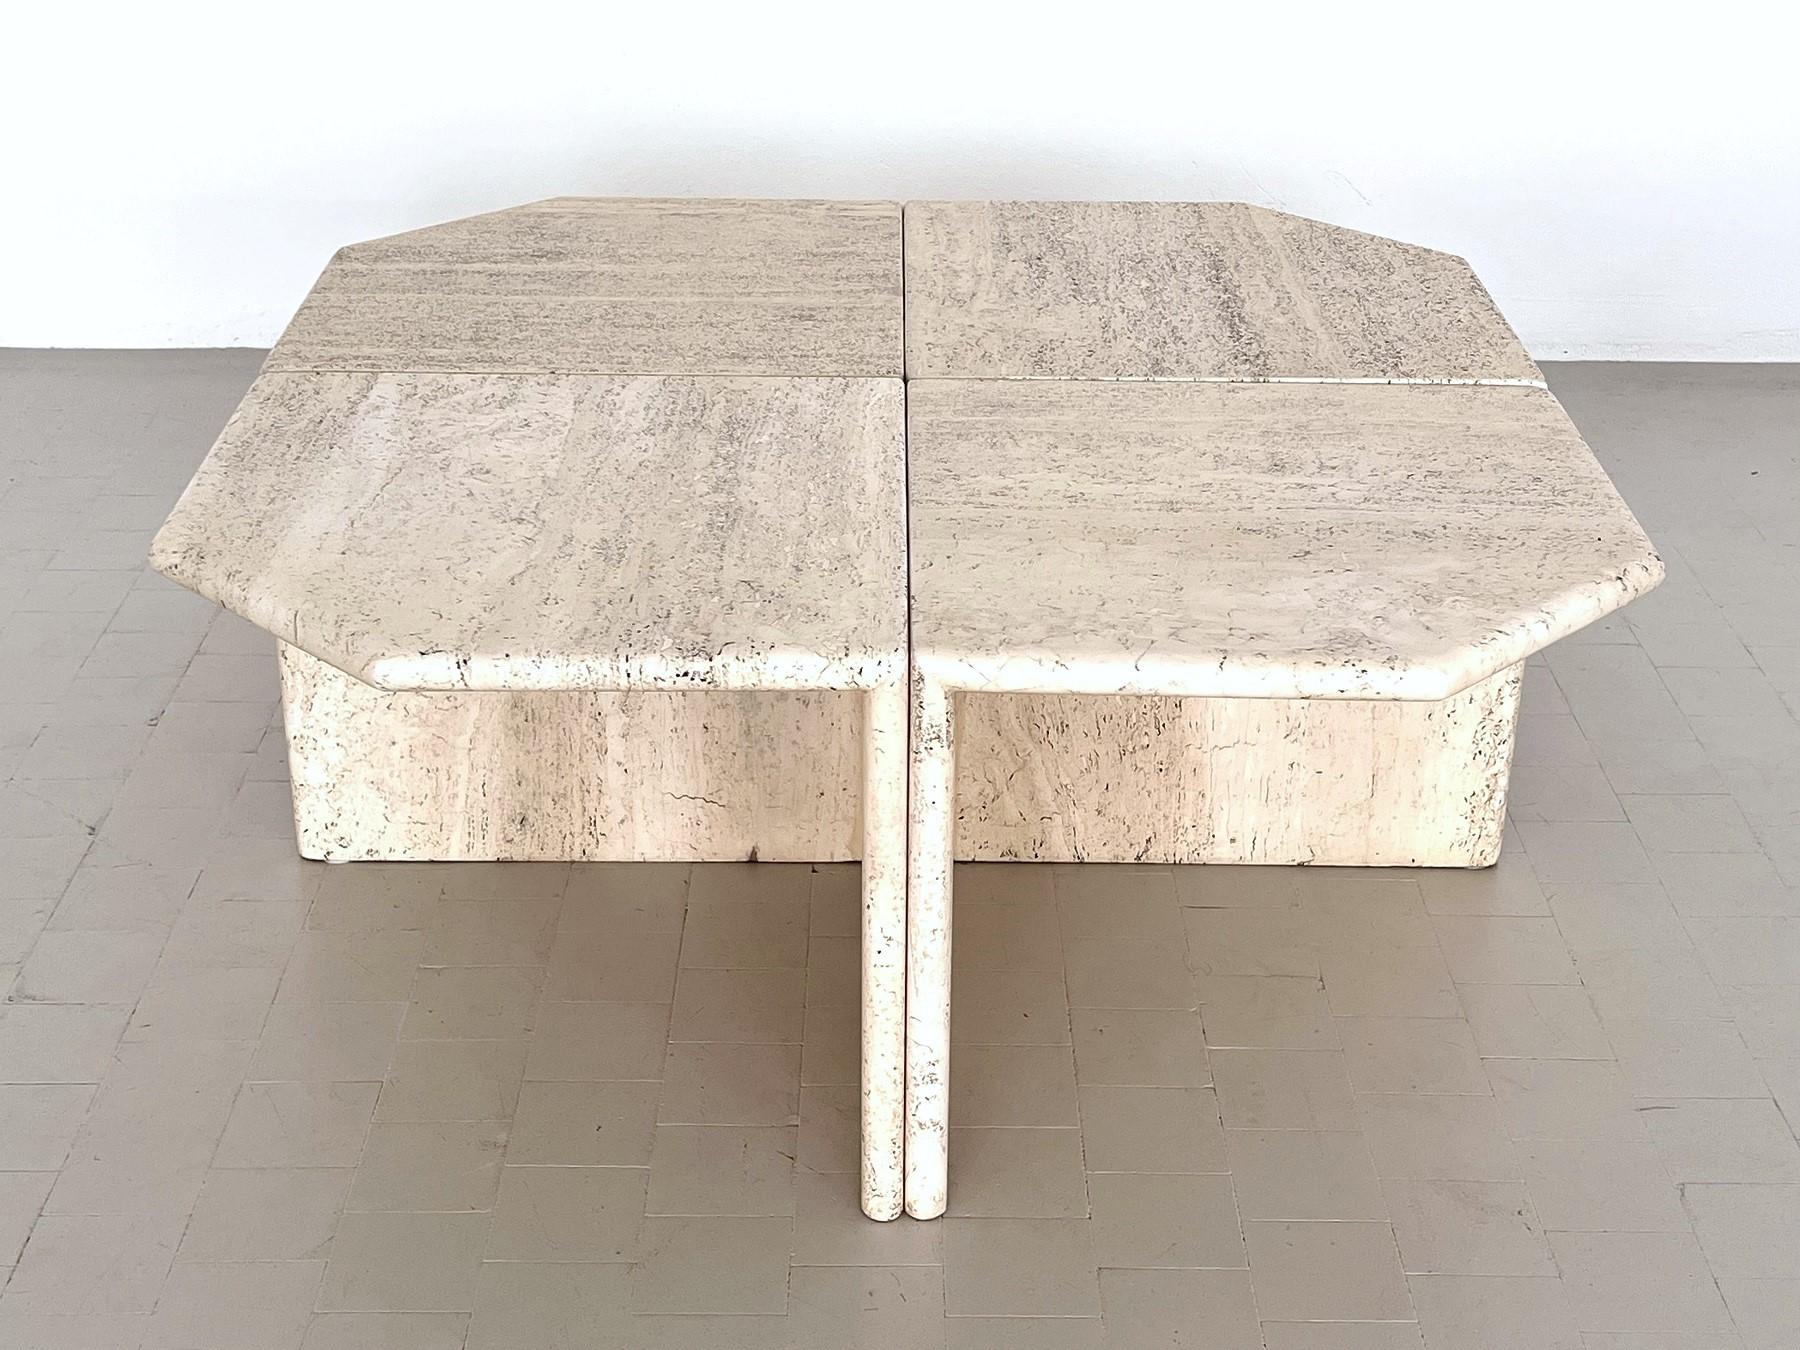 Importante et belle table basse sectionnelle vintage réalisée en Italie en épais marbre travertin italien au cours des années 1970.
La table complète se compose de quatre parties égales qui, réunies, forment une table basse sectionnelle d'une